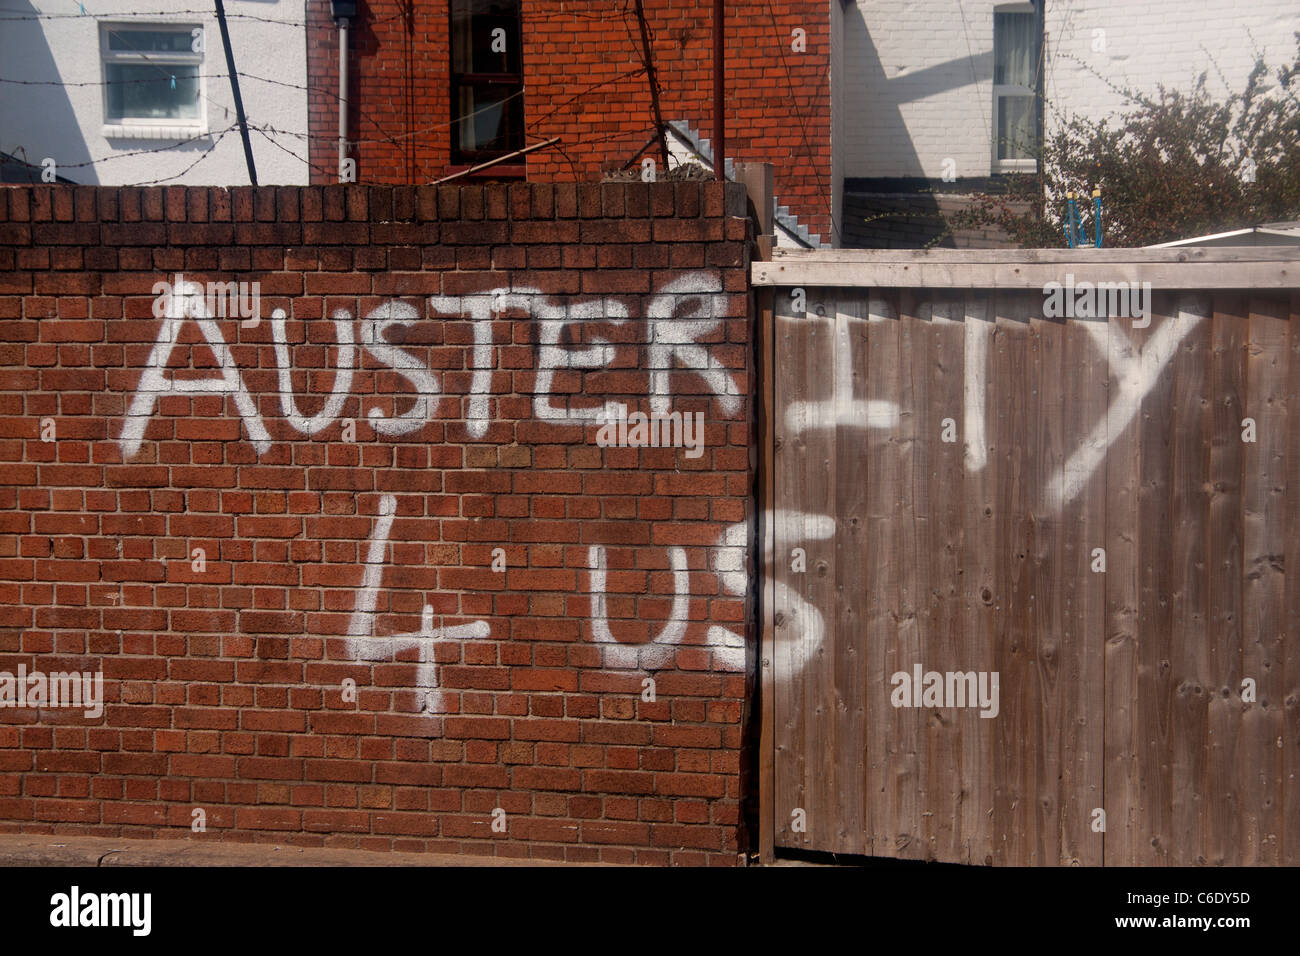 Graffiti condenando la política económica Dinero 4 bonificaciones de guerra 4 bancos austeridad 4 Us pintura blanca sobre la pared de ladrillo rojo Cardiff Gales UK Foto de stock